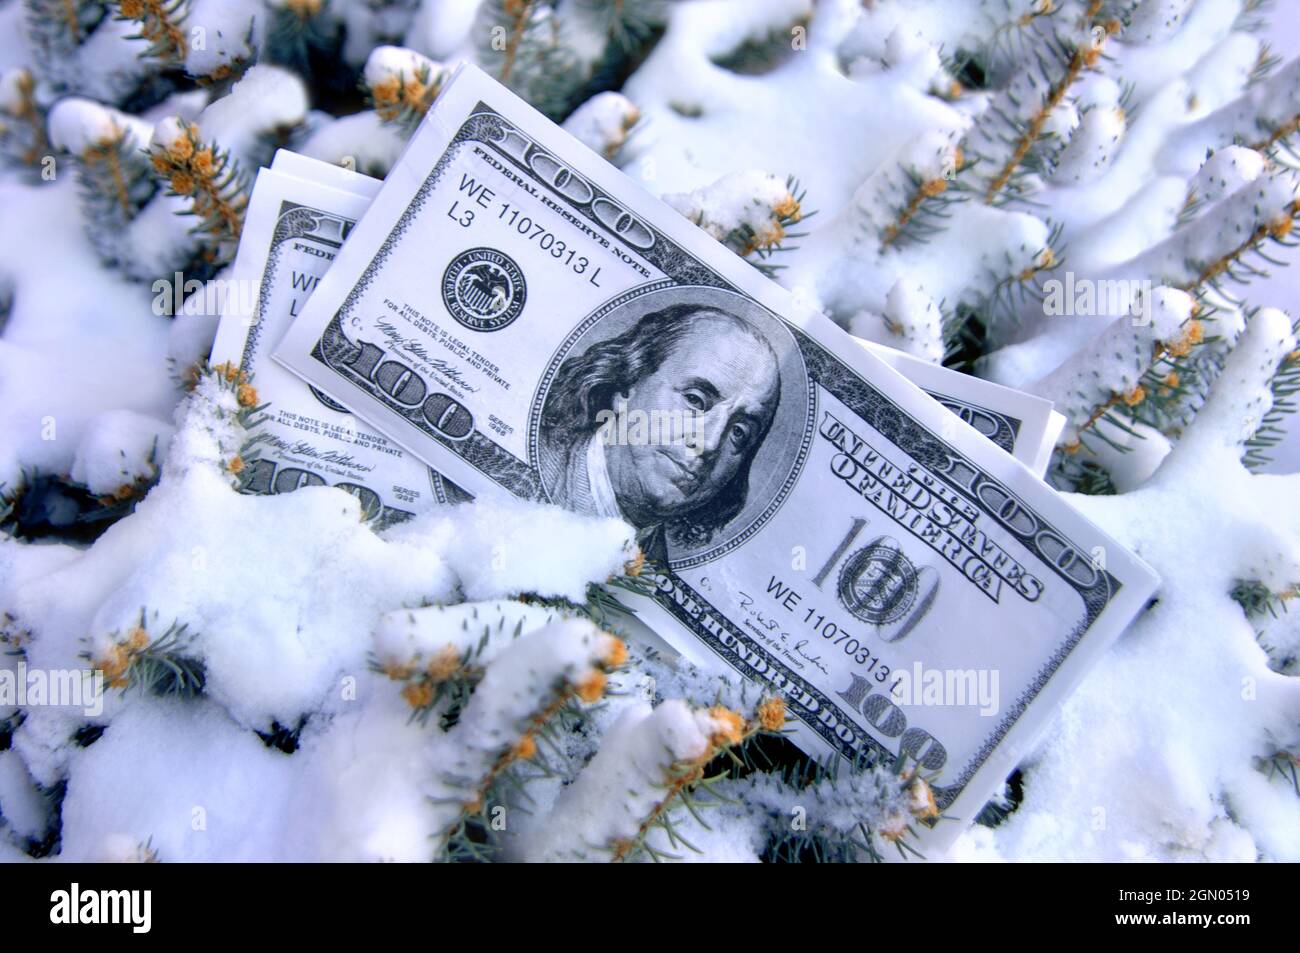 Stapel von 100 Dollar Rechnungen legen, die Hälfte im Schnee begraben.  Bild darstellen könnte "kalten Cash" und "eingefrorenen Vermögenswerte." Stockfoto